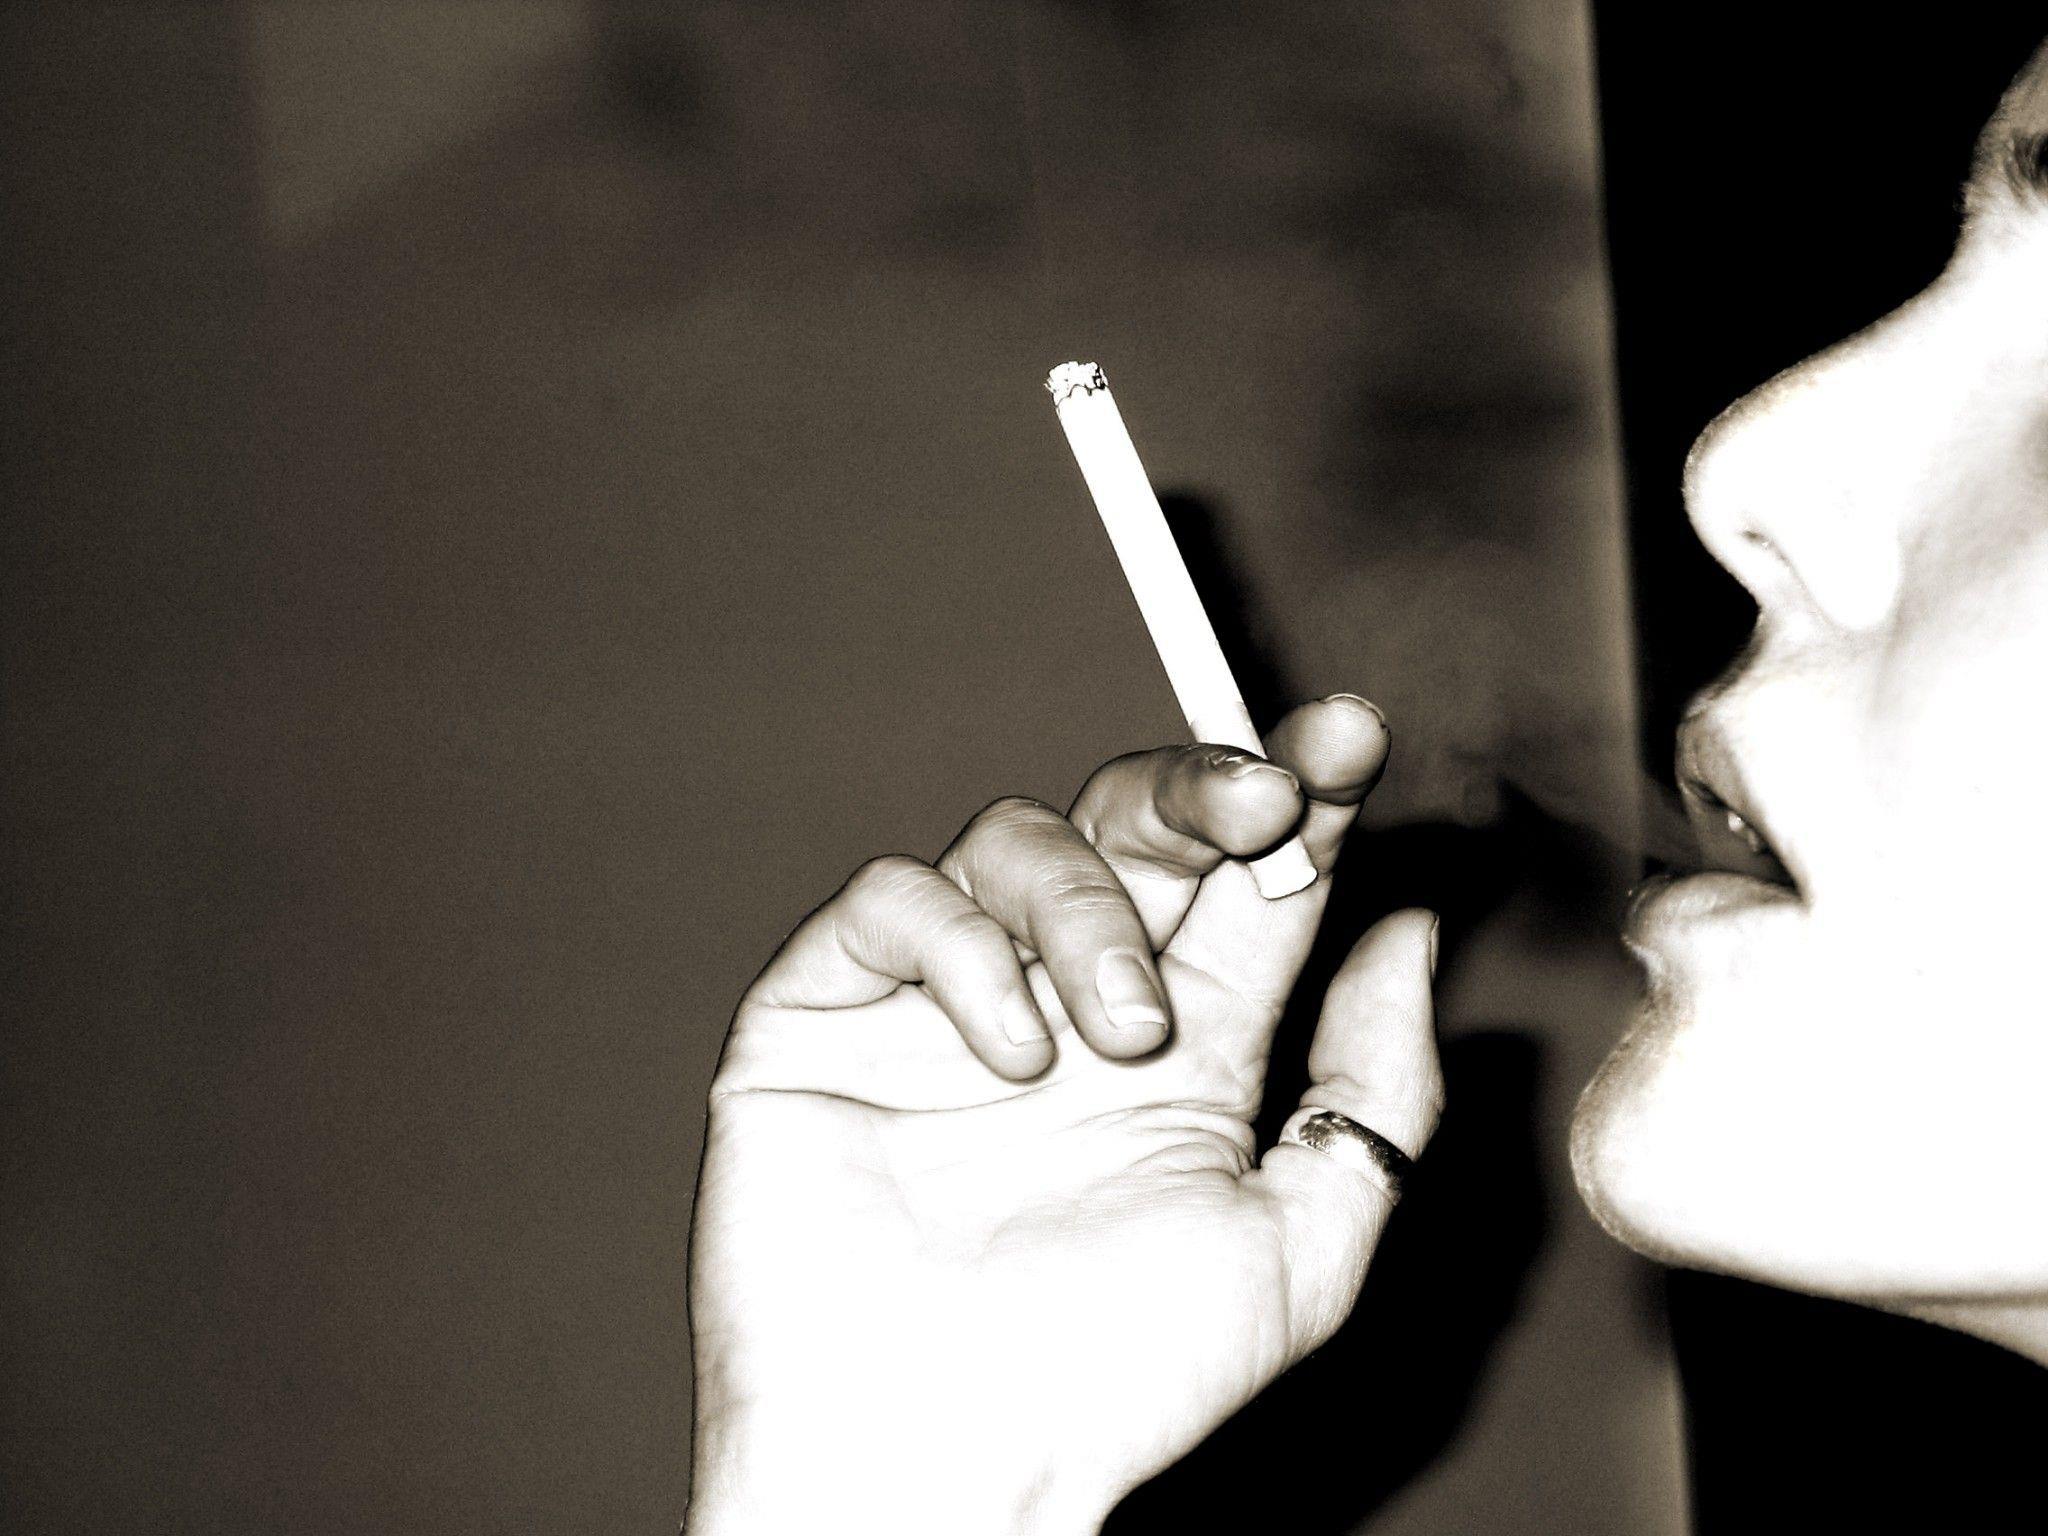 Rauchen: Folgen "dramatisch und langanhaltend".